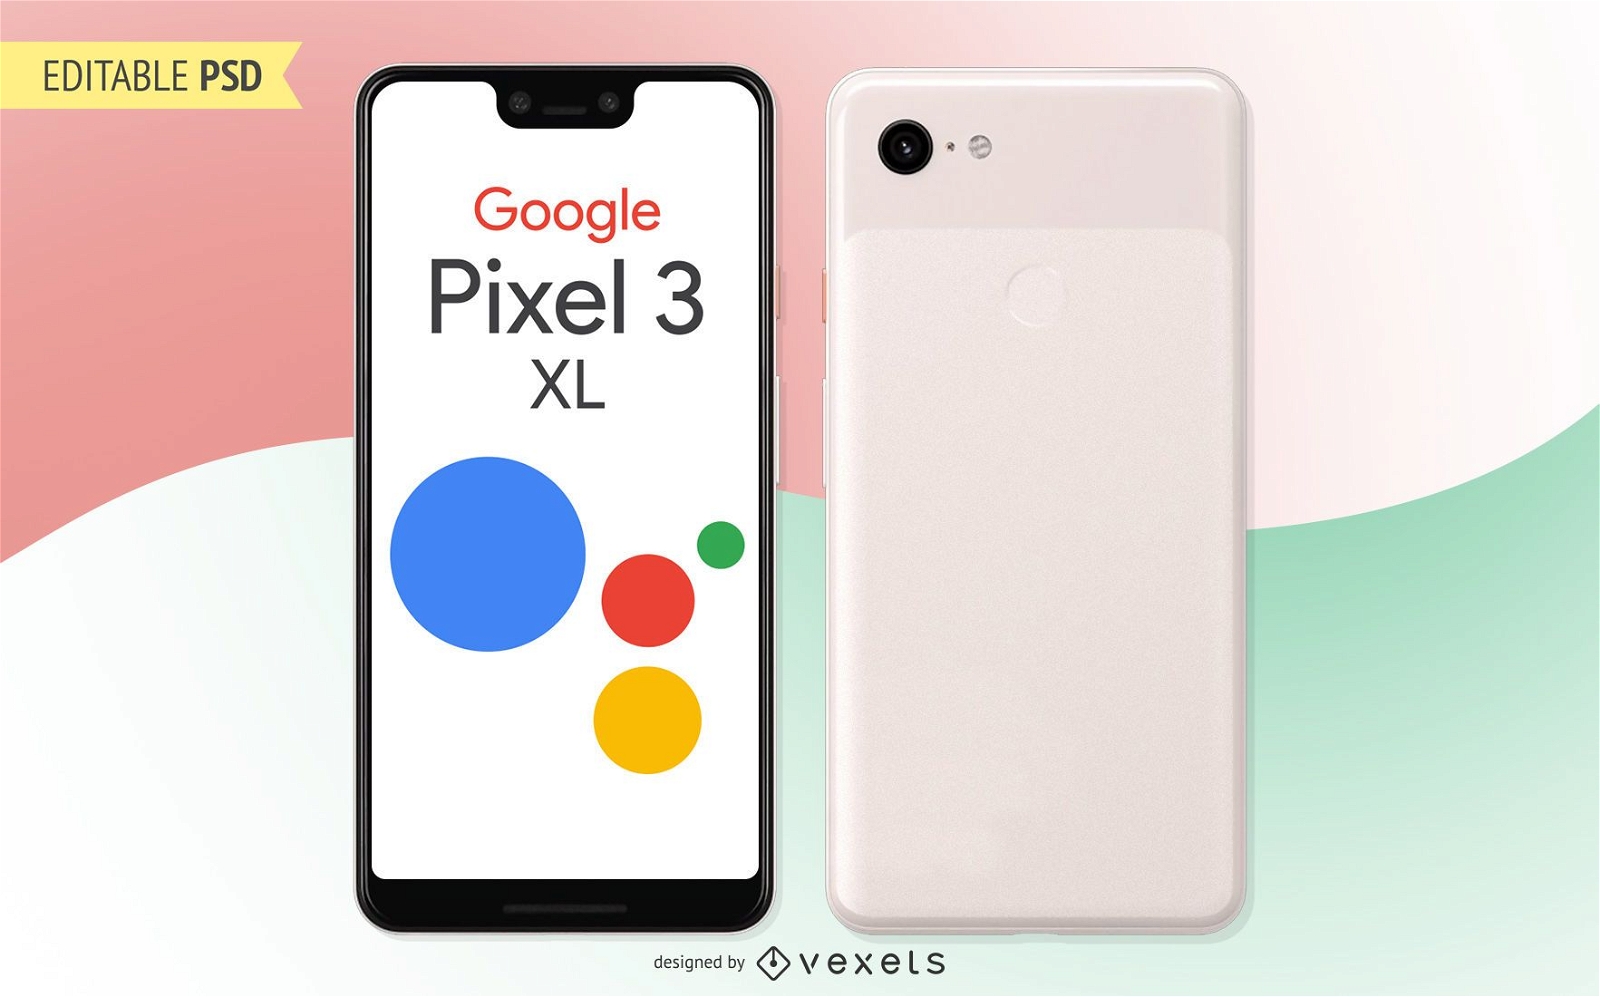 Maquete PSD do Google Pixel 3 XL